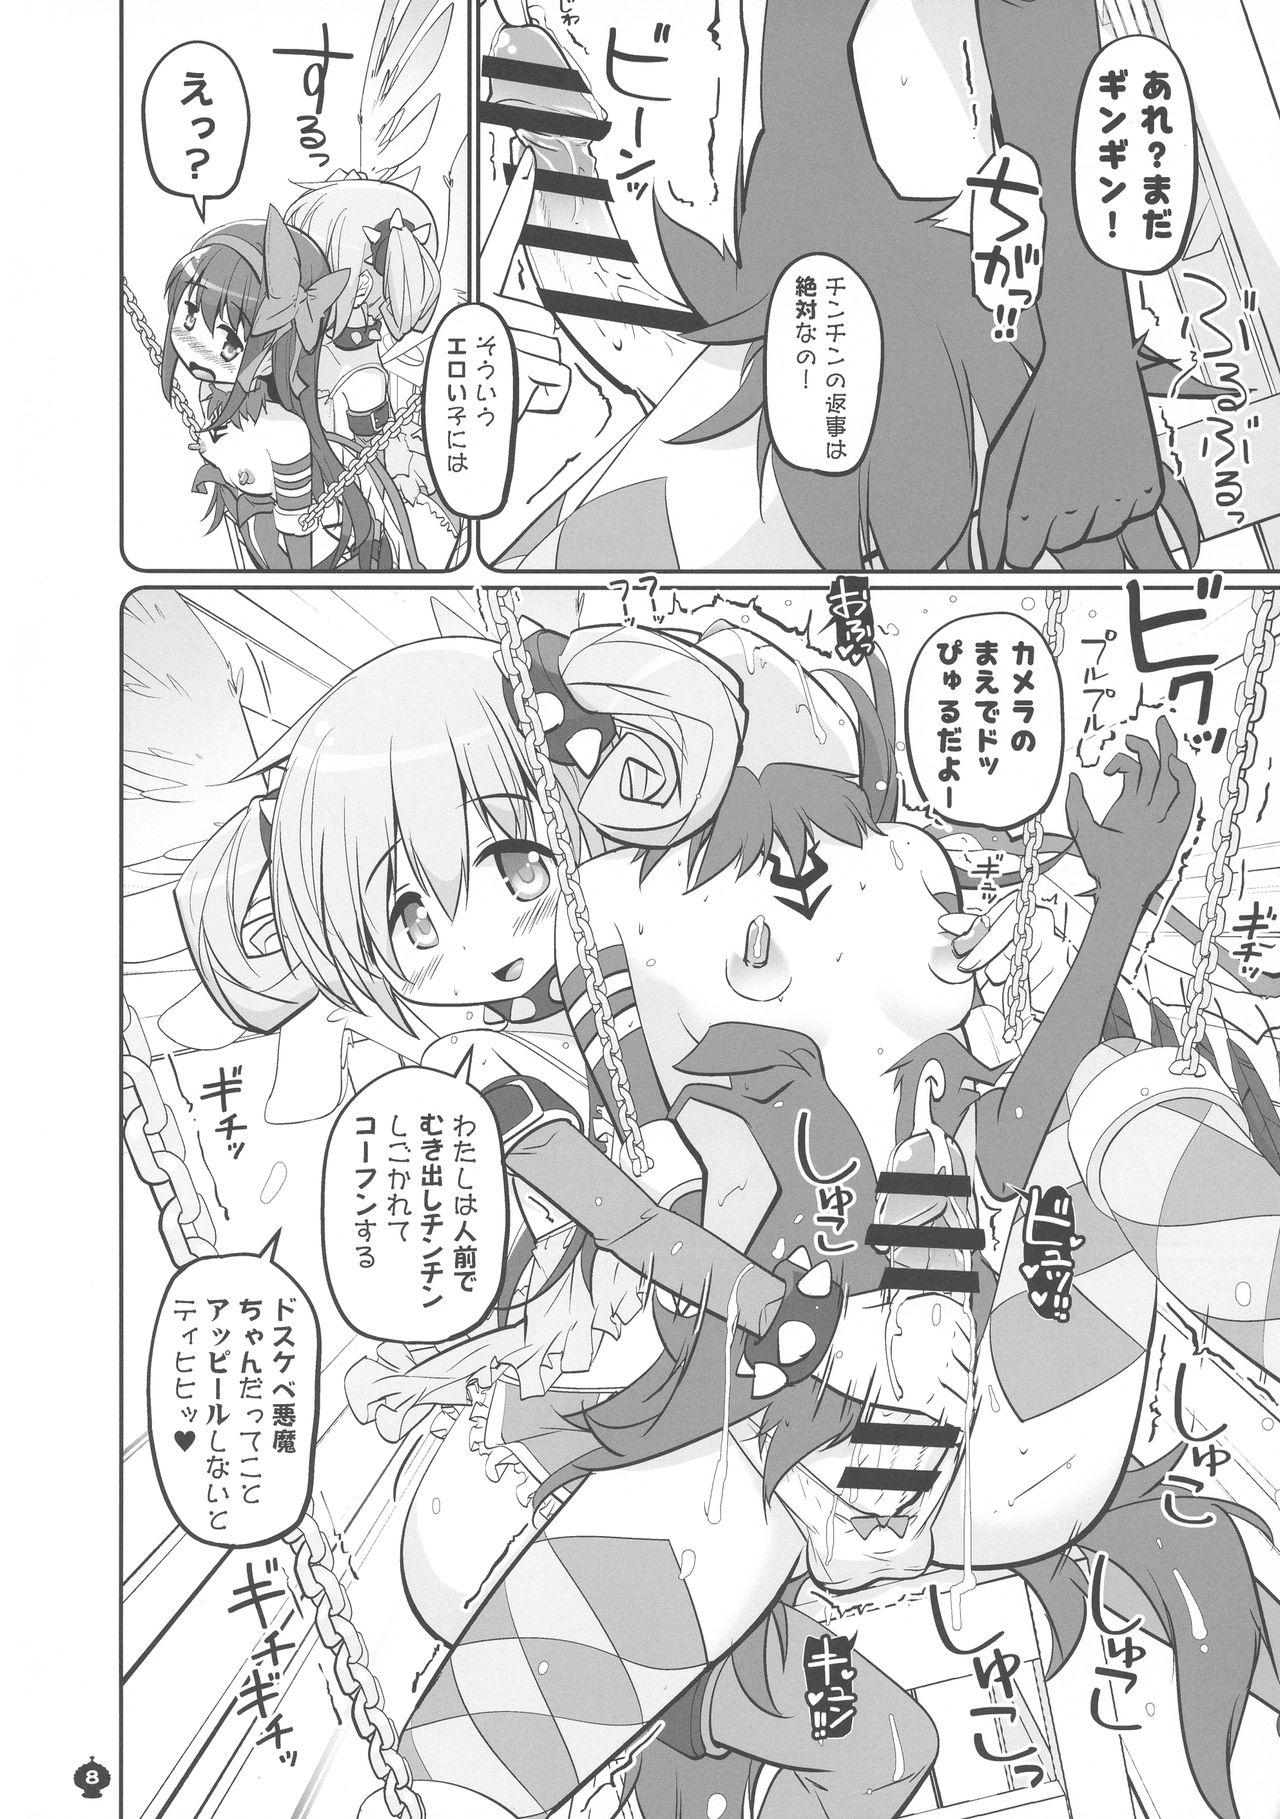 Lesbians Okoshibou o Daku no ga Machigaida nante... - Puella magi madoka magica Scandal - Page 8